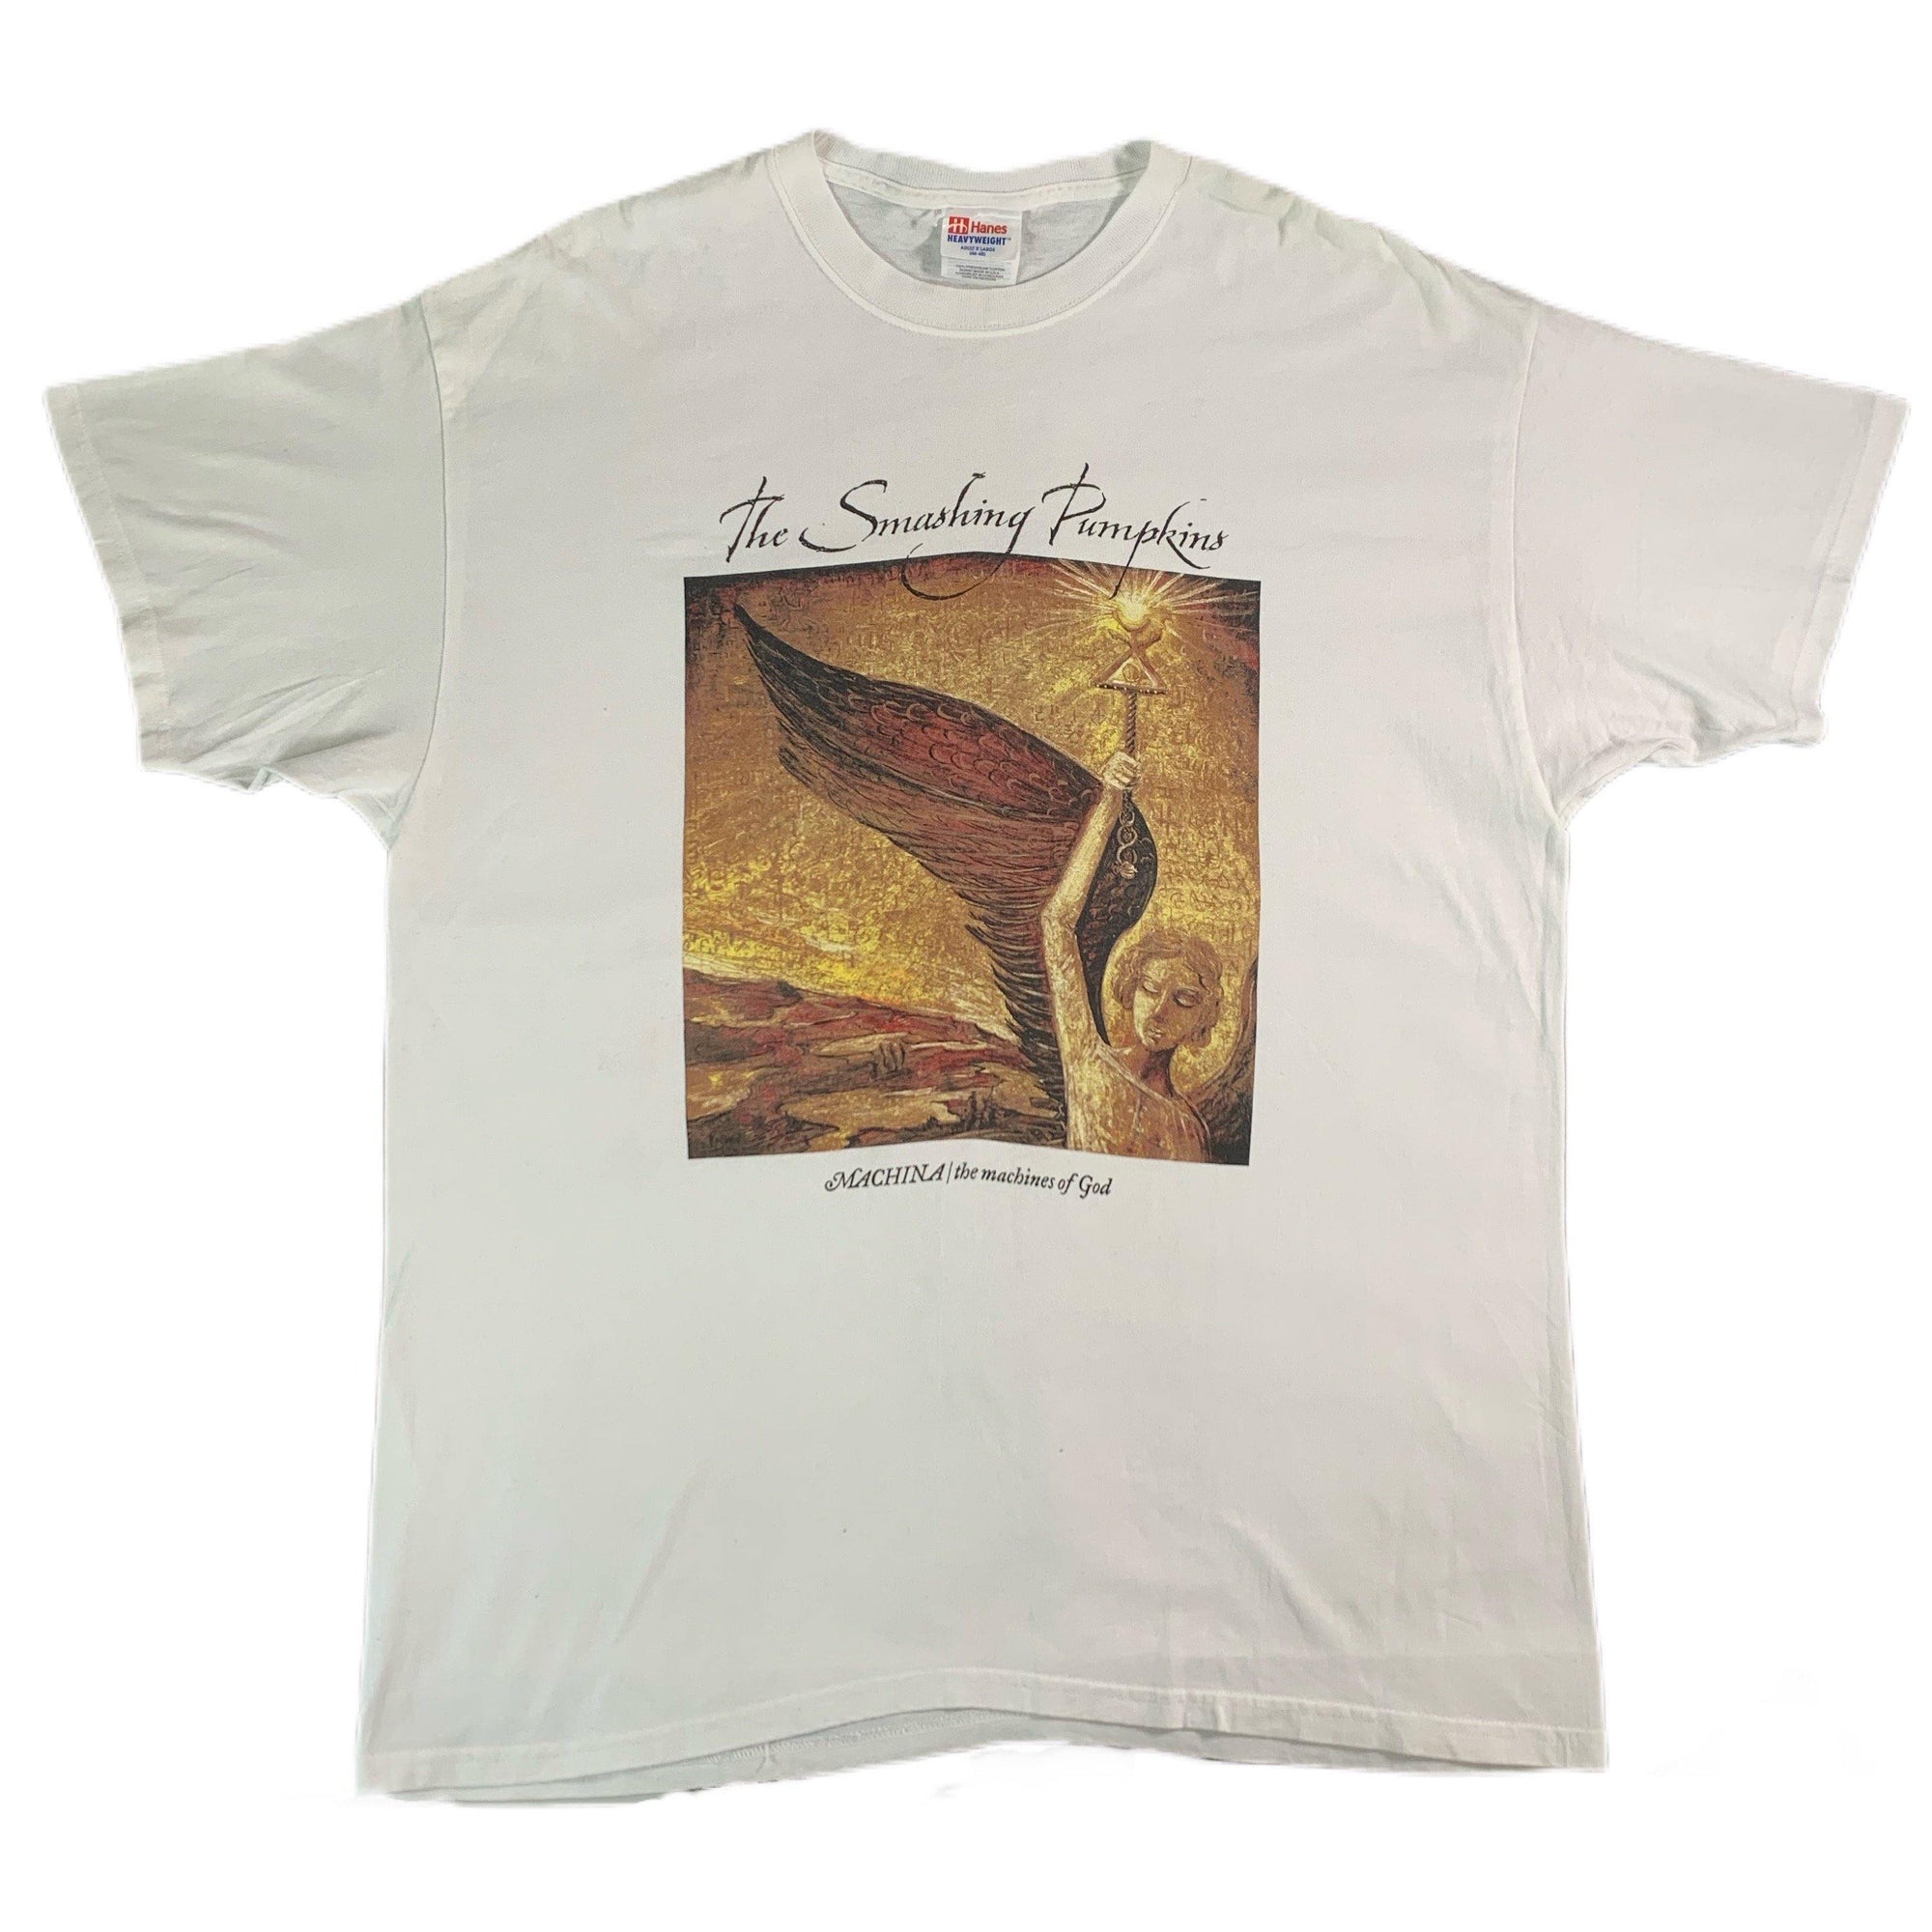 Vintage Smashing Pumpkins "The Sacred And Profane" T-Shirt - jointcustodydc